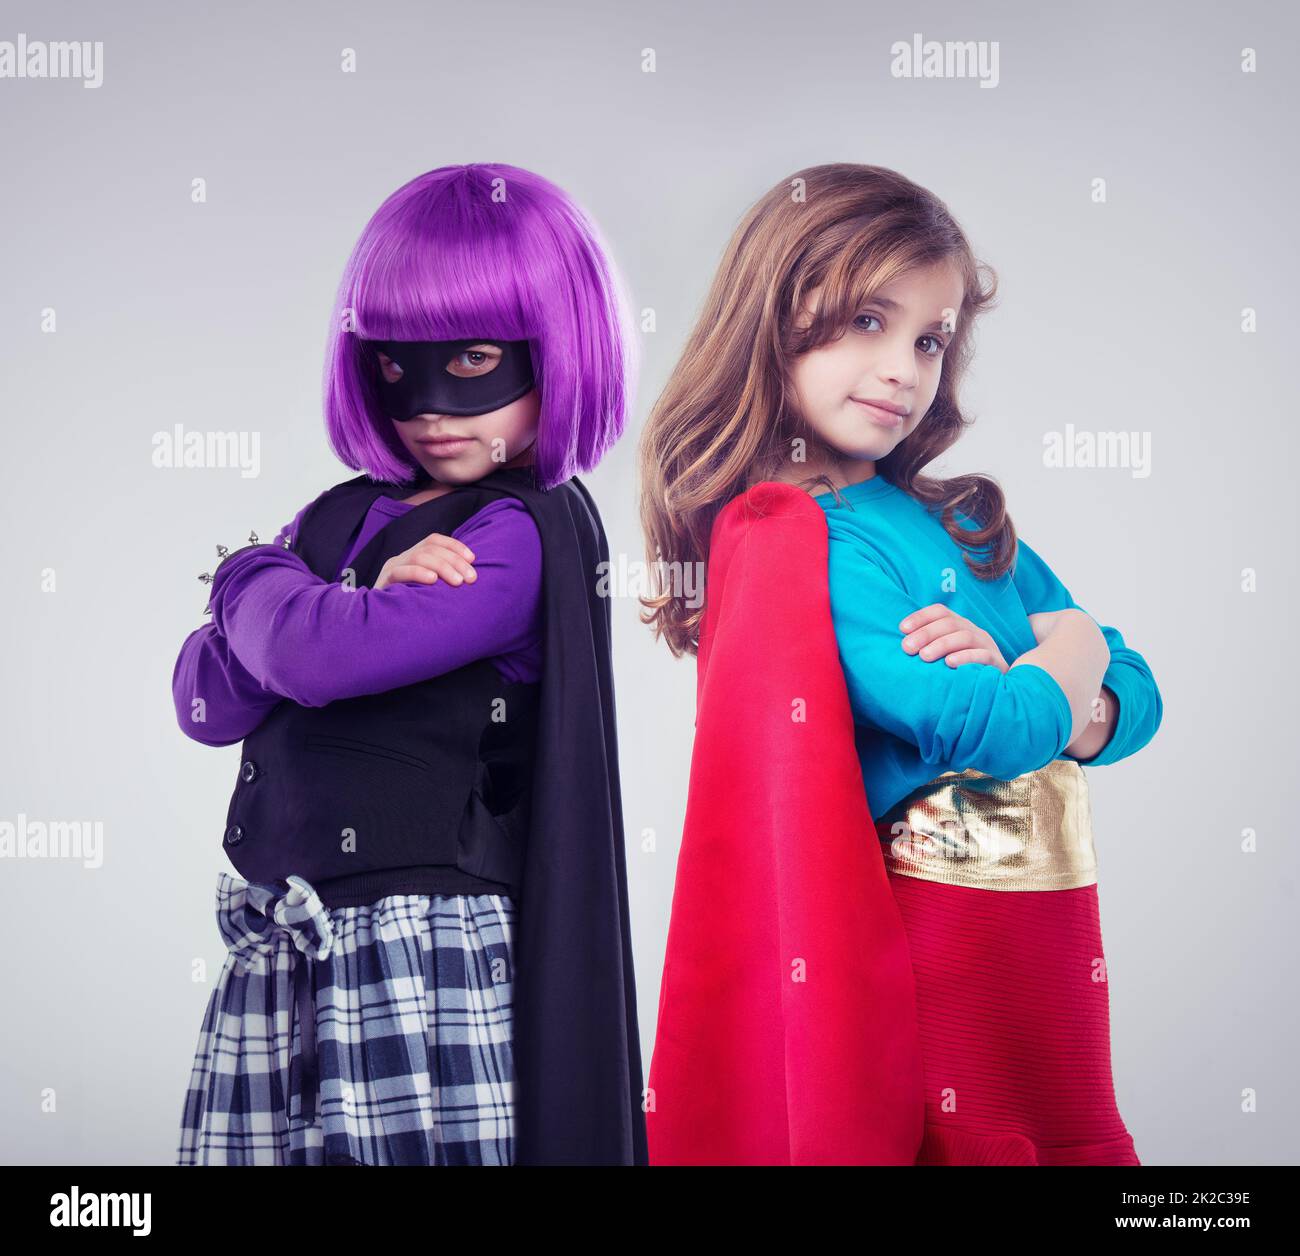 Nicht jedes Mädchen will eine kleine Prinzessin sein. Eine Studioaufnahme von zwei kleinen Mädchen, die als Superhelden und Bösewicht verkleidet sind. Stockfoto